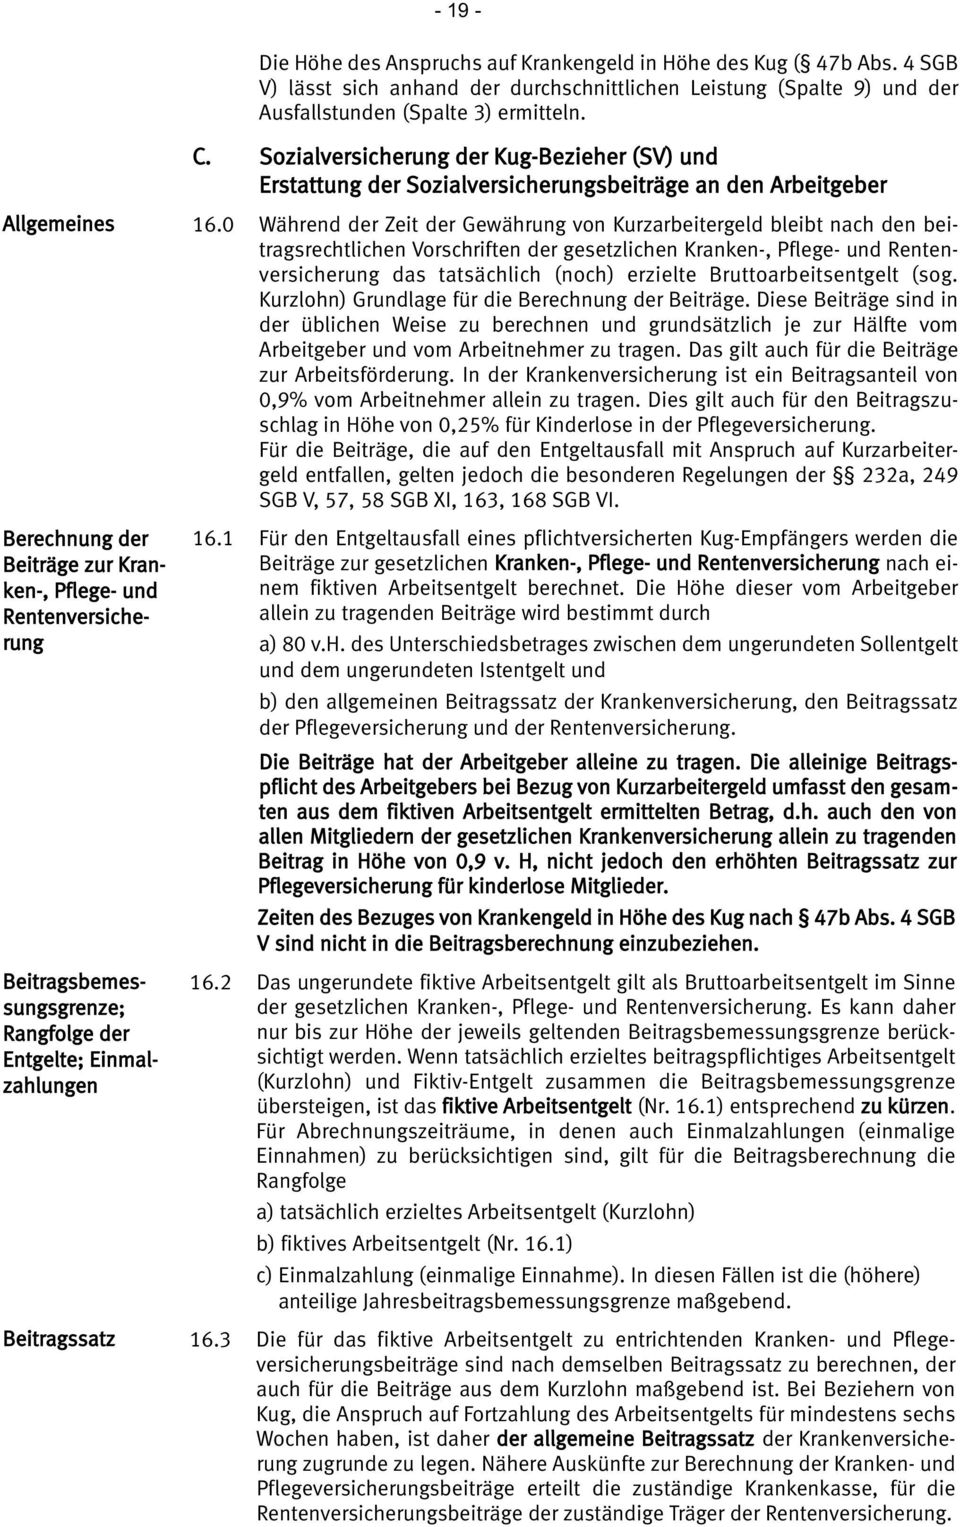 Beitragsbemessungsgrenze; Rangfolge der Entgelte; Einmalzahlungen Beitragssatz 16.